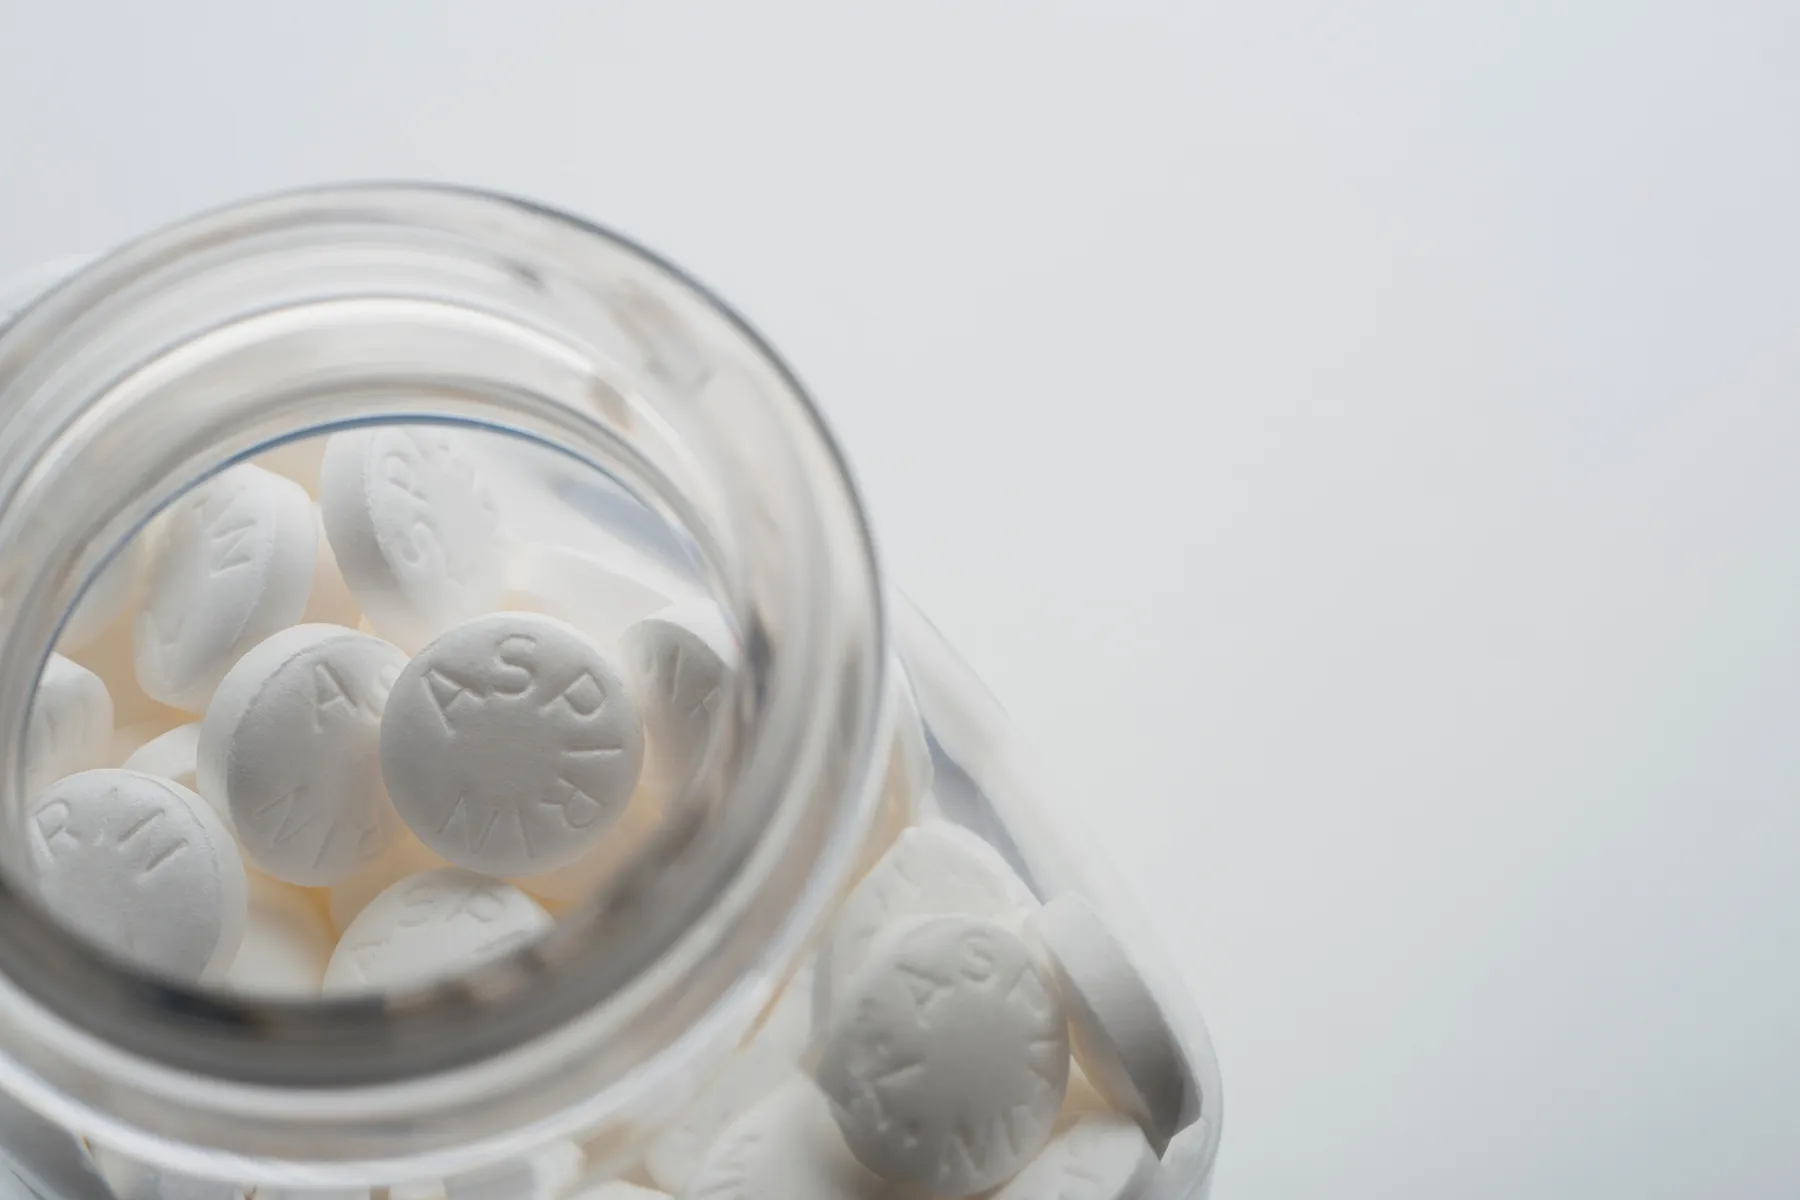 Cảnh báo về Aspirin: Bệnh thiếu máu có thể tăng lên khi sử dụng ở người lớn tuổi